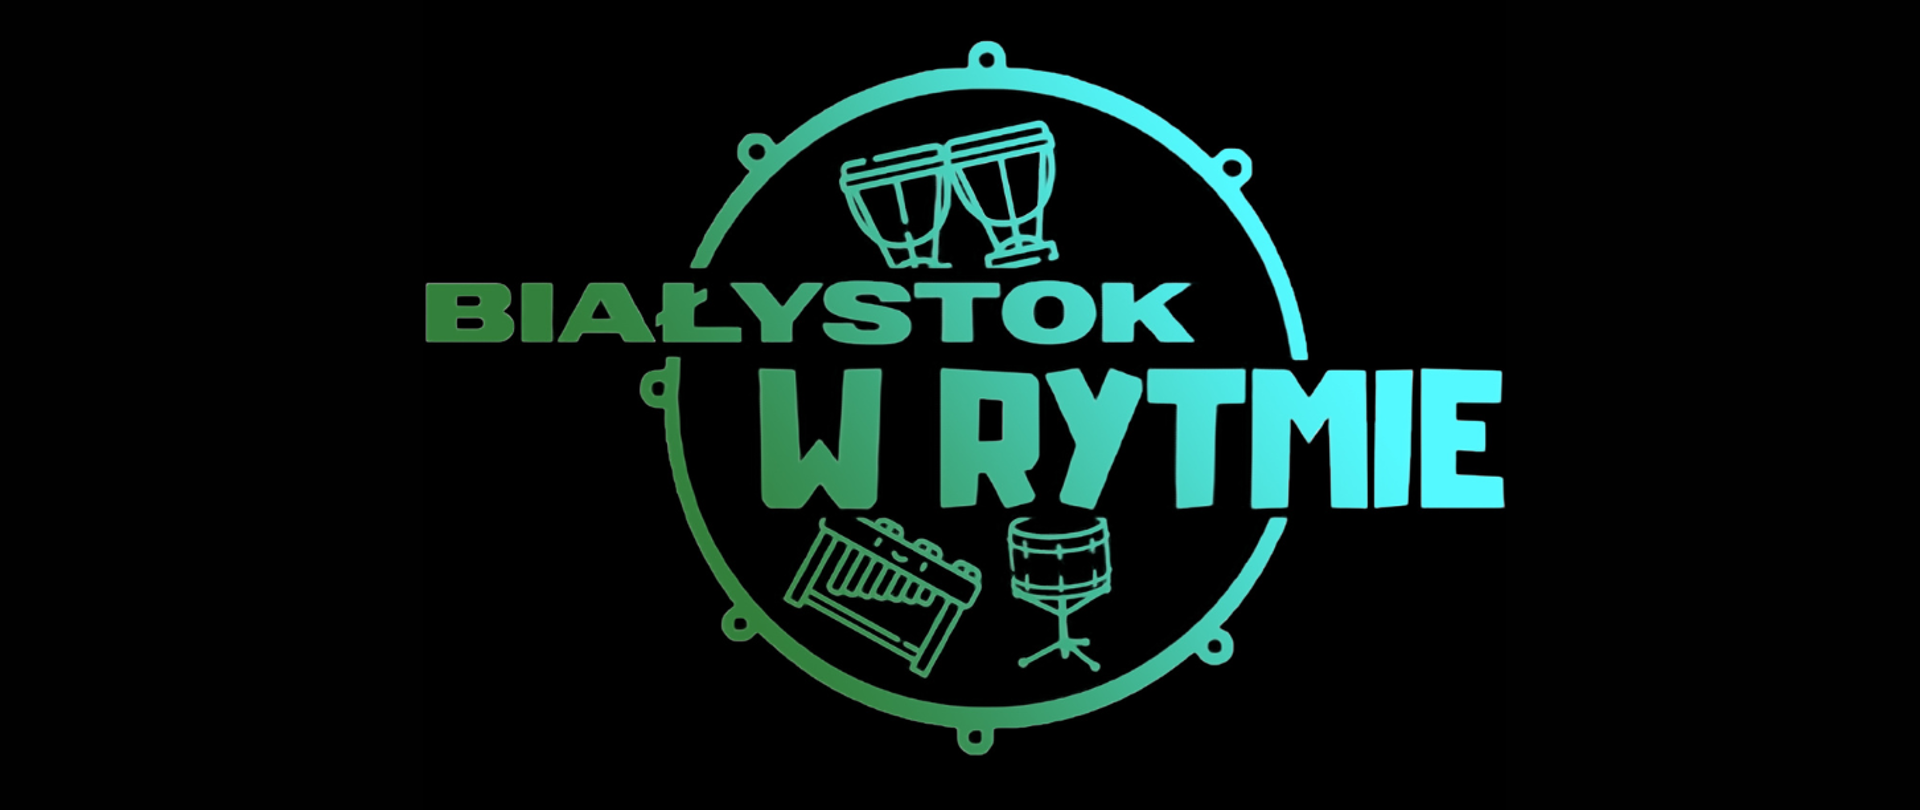 Logotyp z napisem "Białystok w rytmie". W grafice wielki bęben, kotły, werbel i ksylofon w wersji uproszczonej. Całość w kolorze seledynowym na czarnym tle.